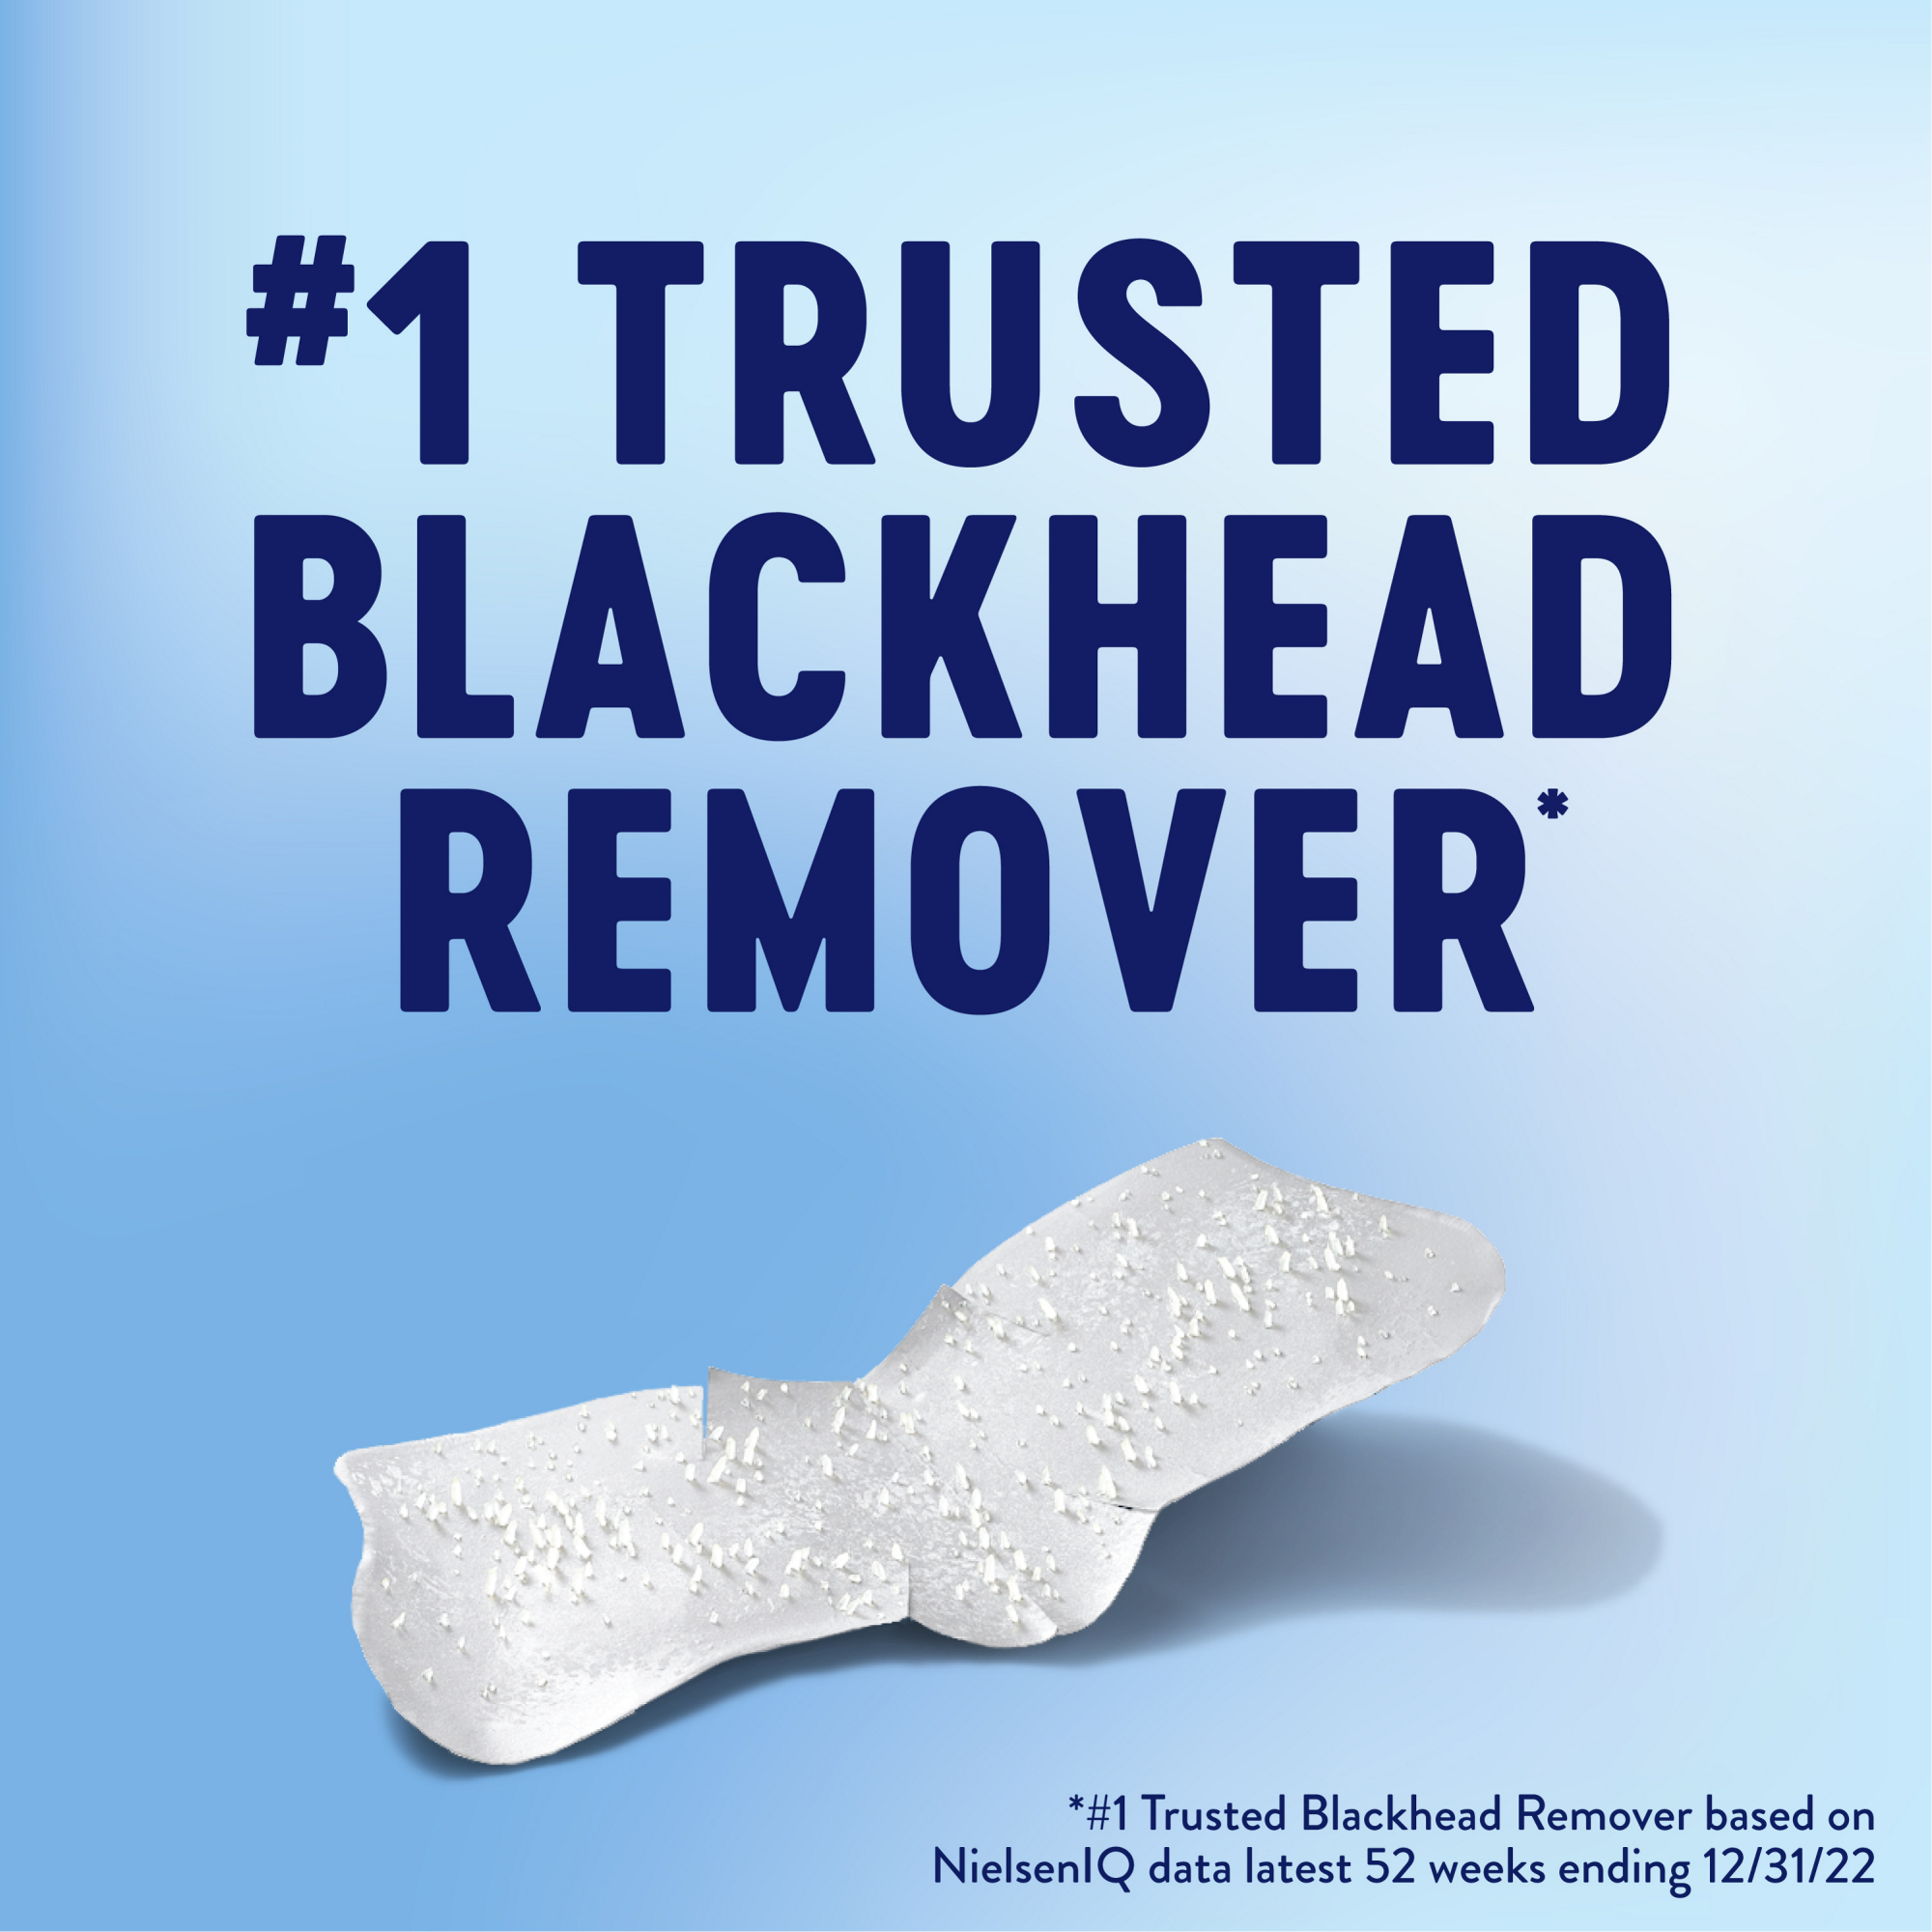 #1 Trusted blackhead remover.* #1 Trusted Blackhead remove based on NielsenlQ Data latest 52 weeks ending 12/31/22